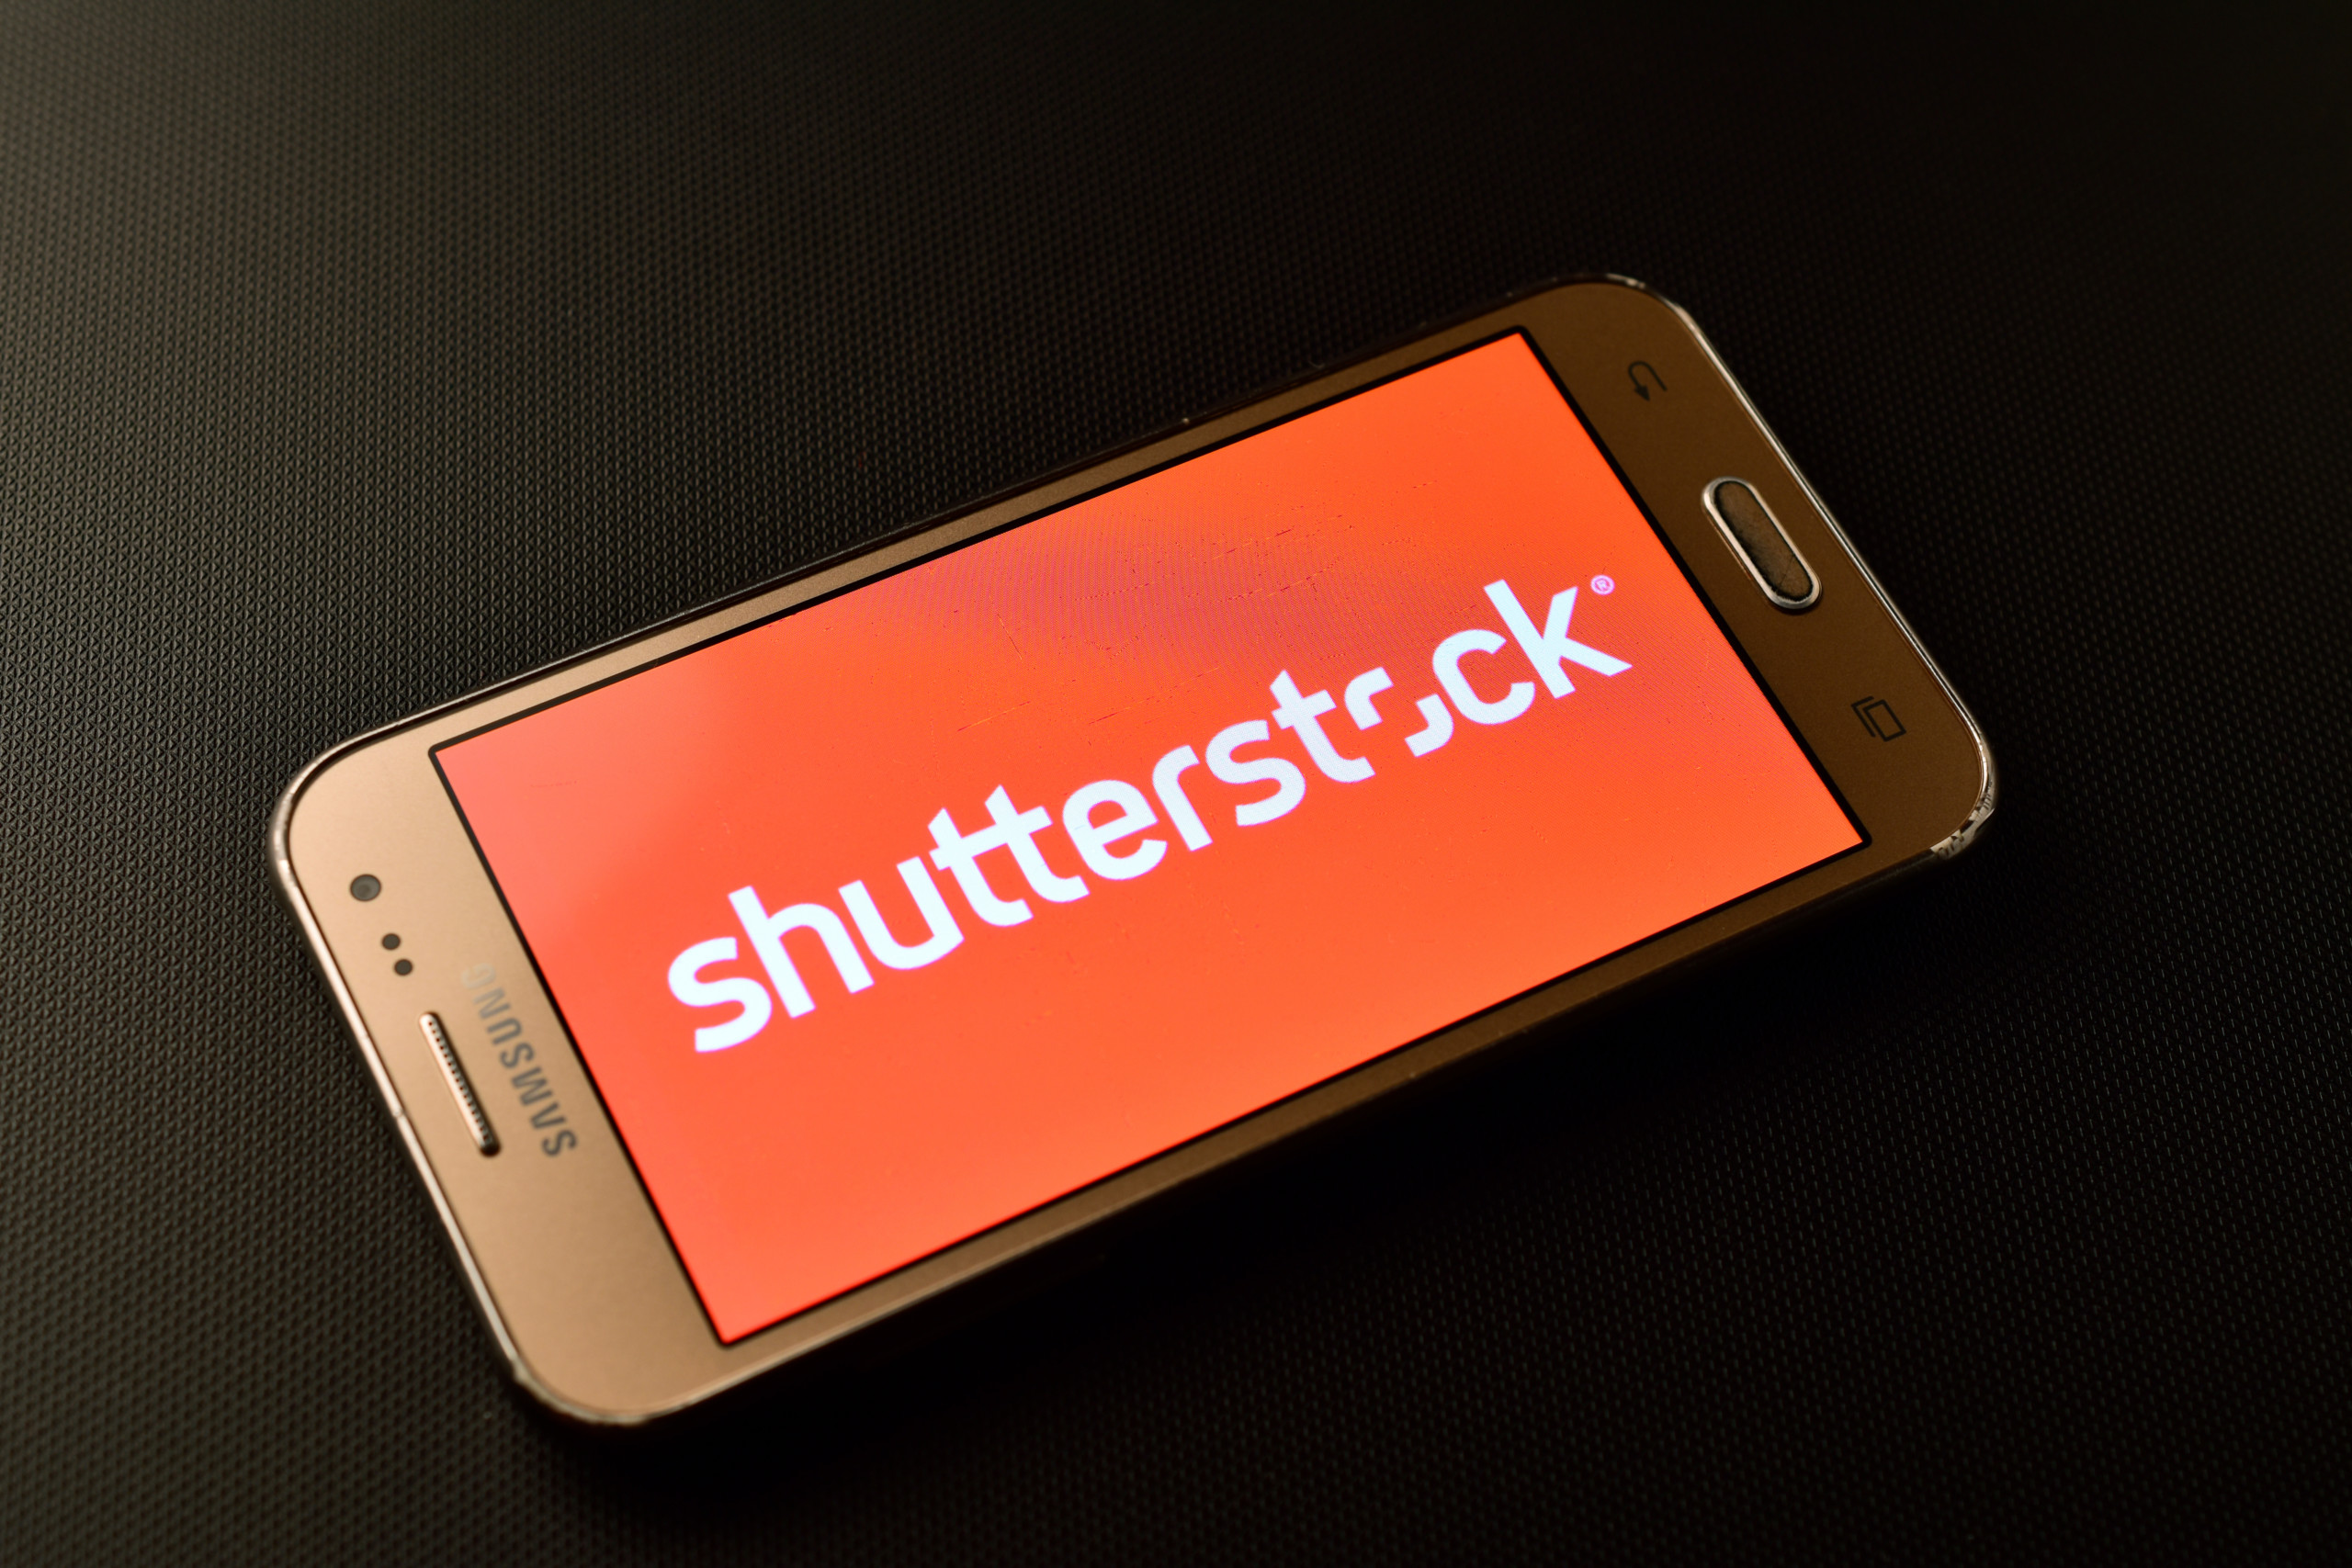 Shutterstock weitet Vereinbarung mit OpenAI aus, um generative KI-Tools zu entwickeln